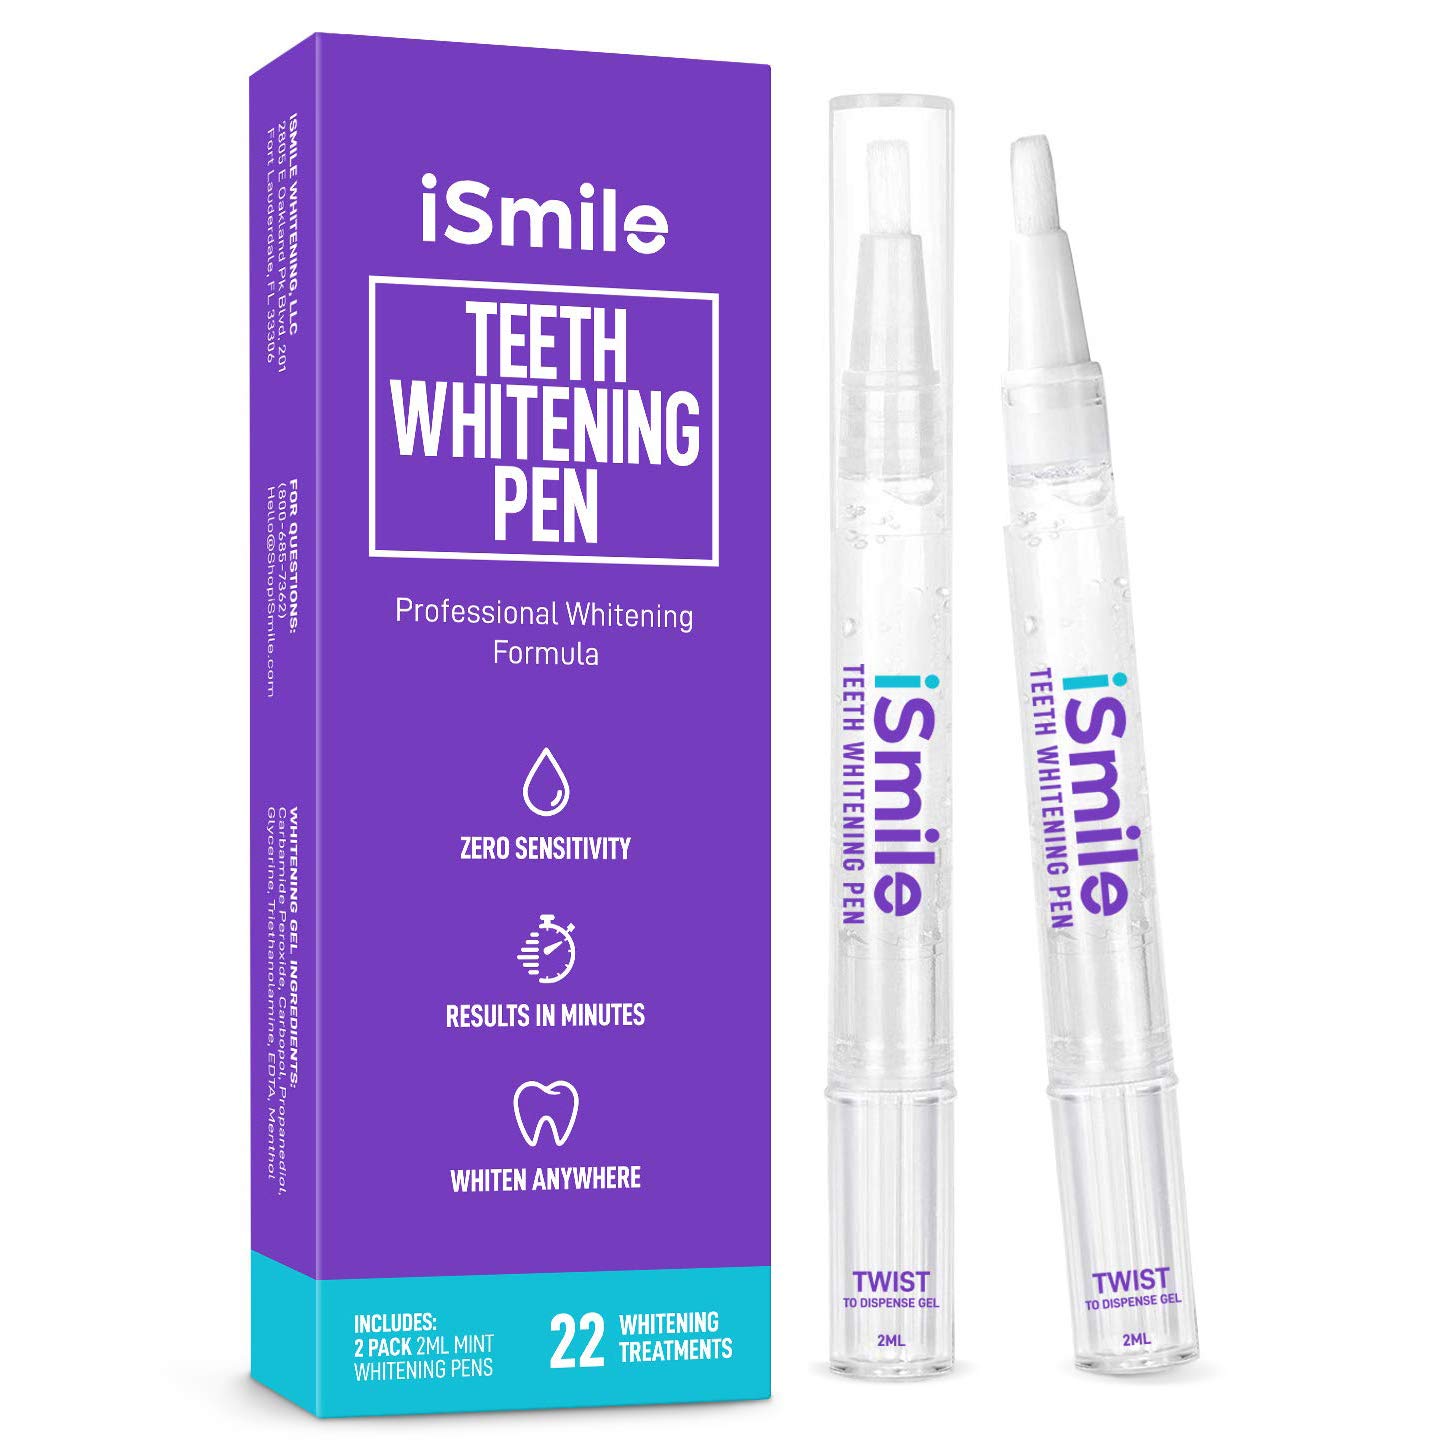 iSmile Teeth Whitening Pen, 2-Pack